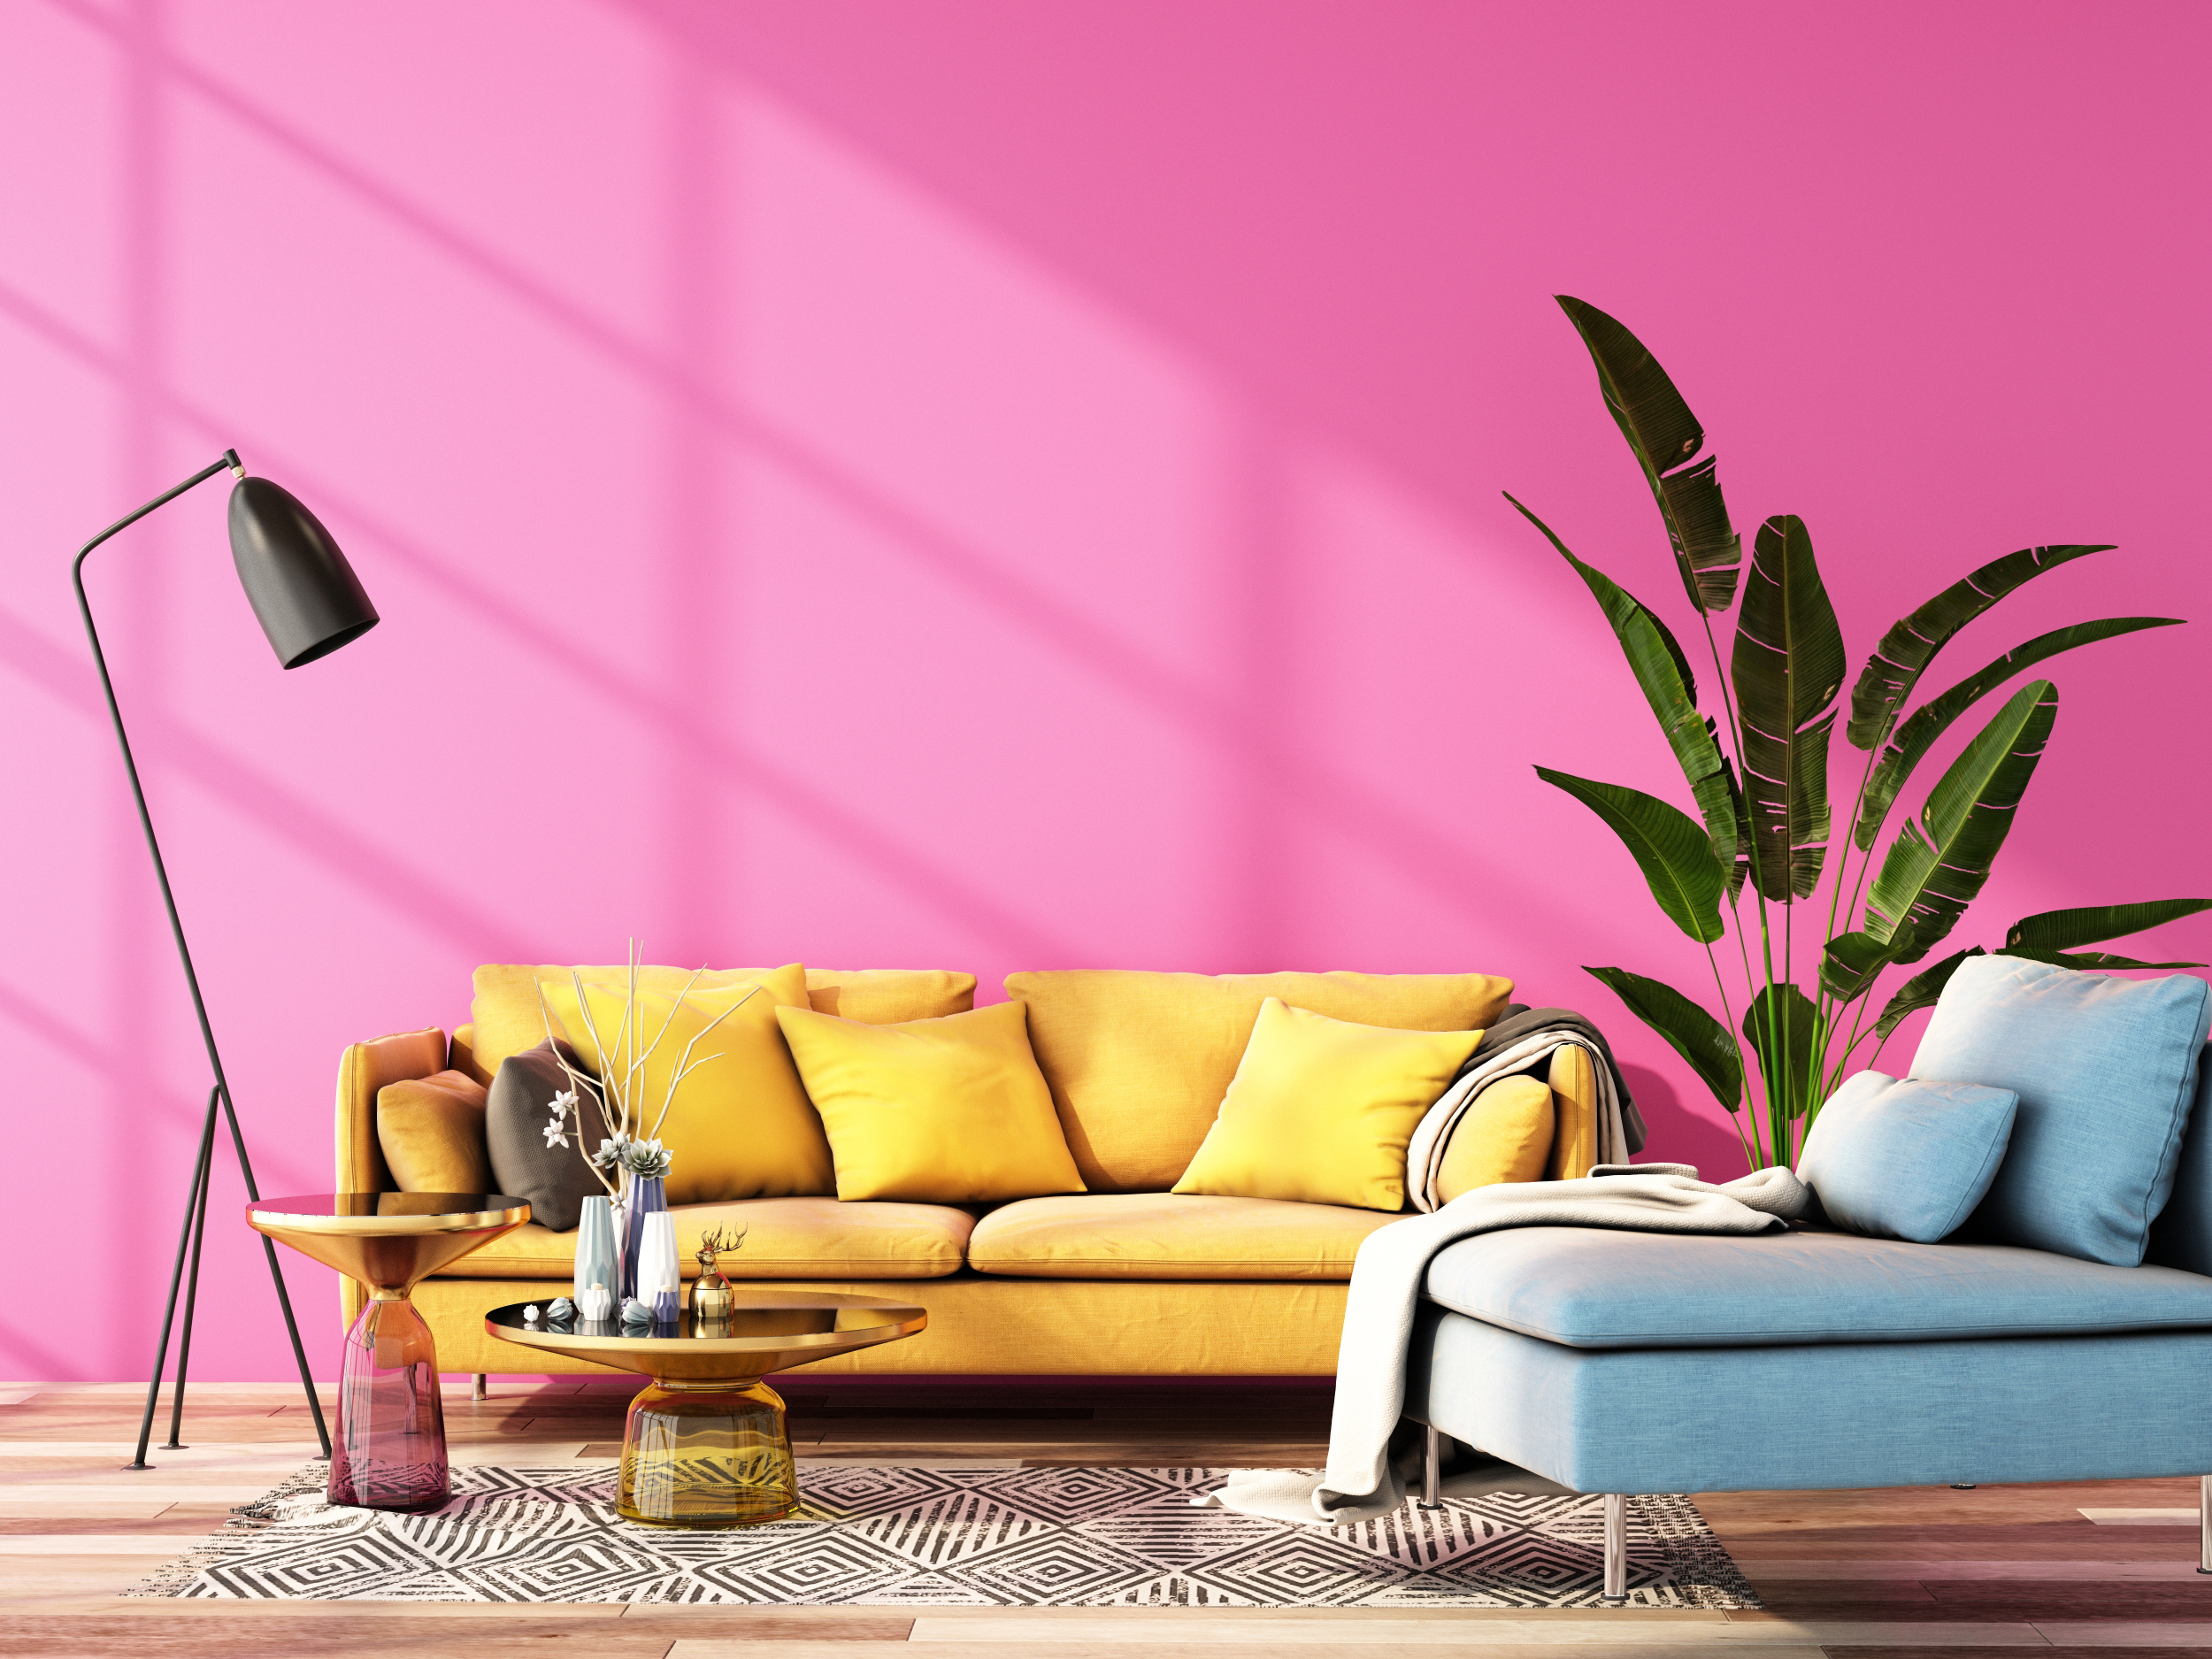 A imagem mostra uma sala com parede rosa chiclete, sofá amarelo de três lugares, uma poltrona azul no lado direito e uma planta entre ambos. Além disso, em frente ao sofa amarelo, duas mesas de apoio , um tapete e luminária ao canto.